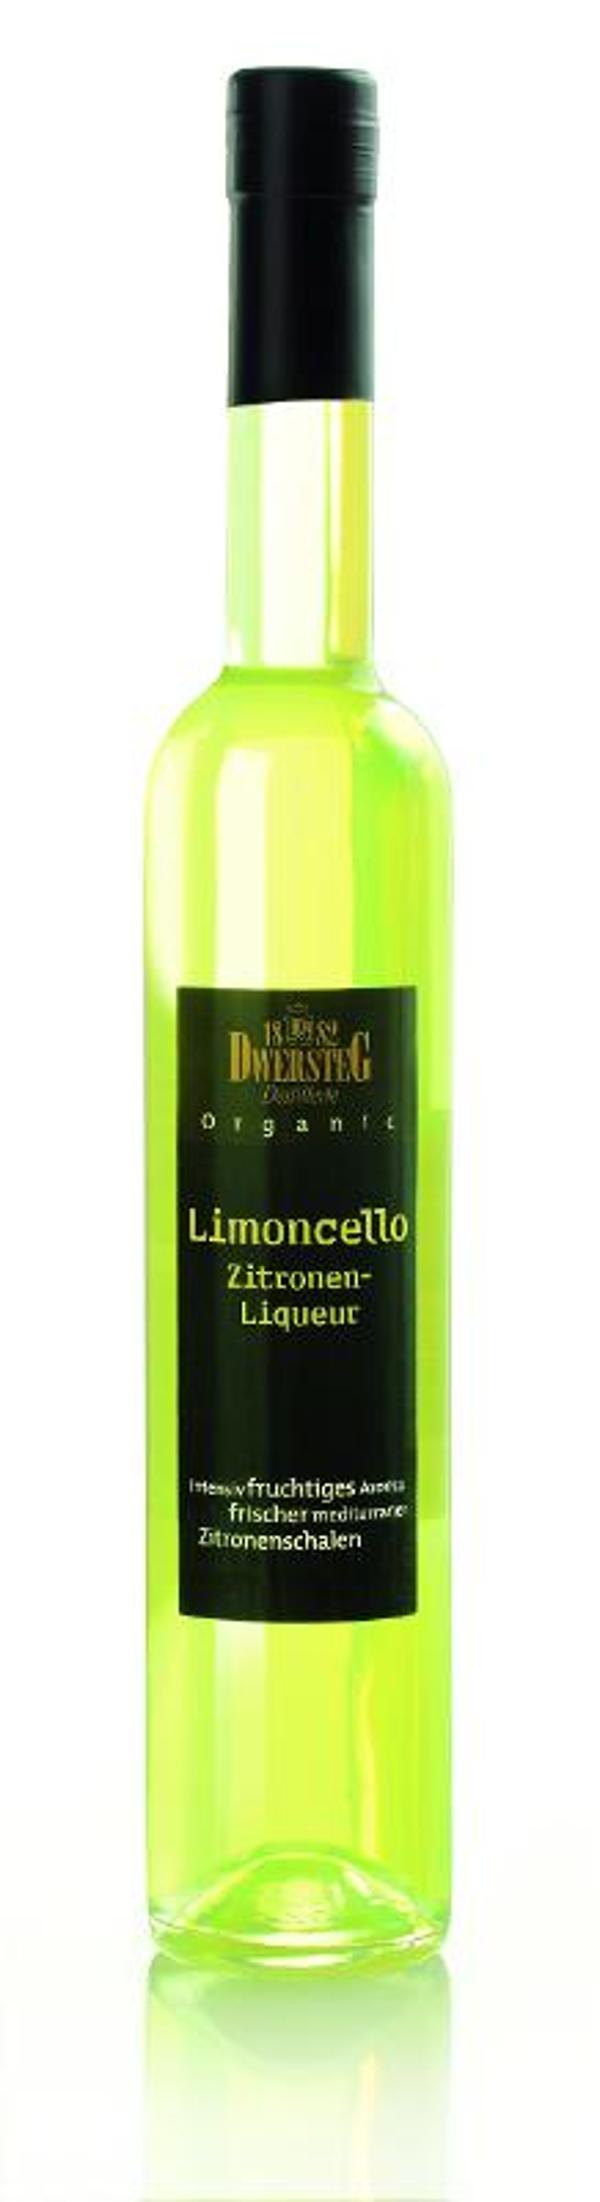 Produktfoto zu Limoncello Liqueur 0,5l